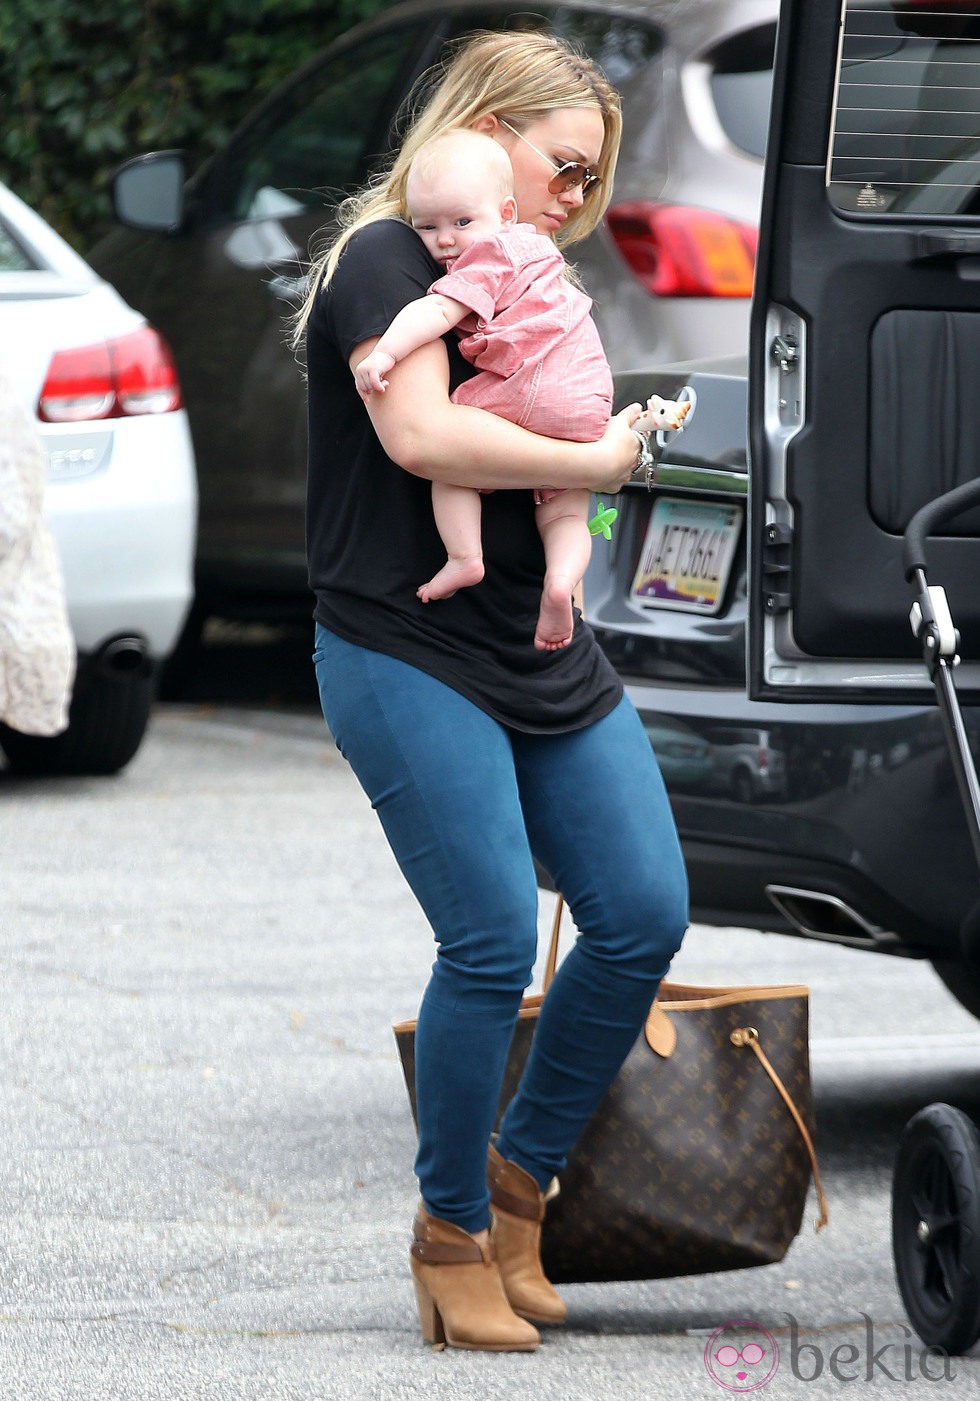 Hilary Duff con su hijo Luca Cruz por las calles de Santa Monica